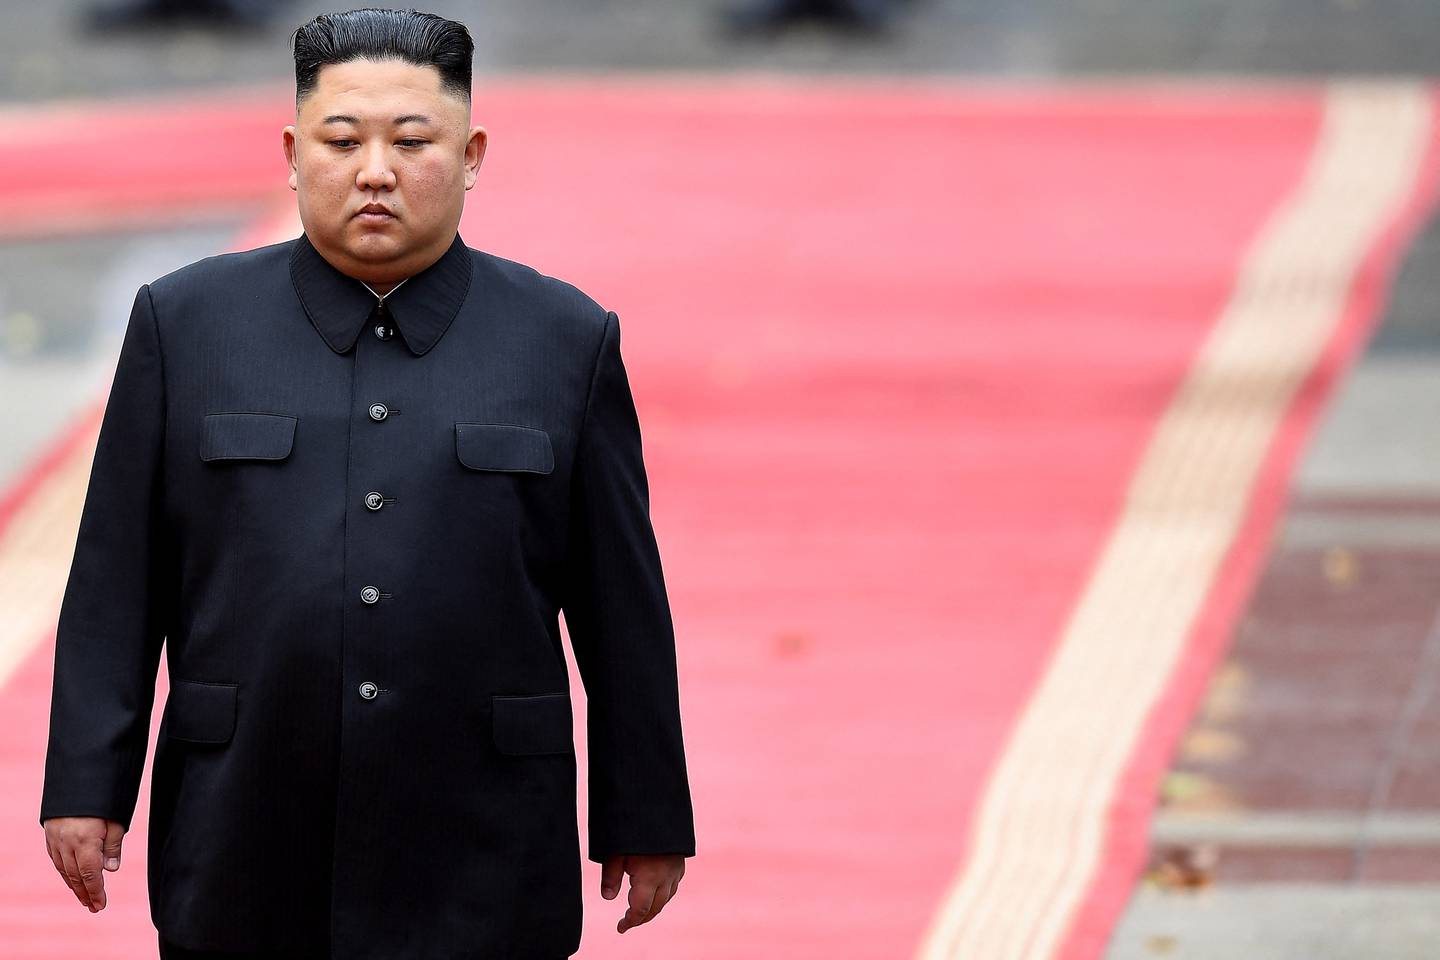 Los disparos tienen lugar tras una salva de declaraciones belicosas del dirigente norcoreano, Kim Jong Un, que en los últimos días ha amenazado con “aniquilar” Corea del Sur y Estados Unidos.